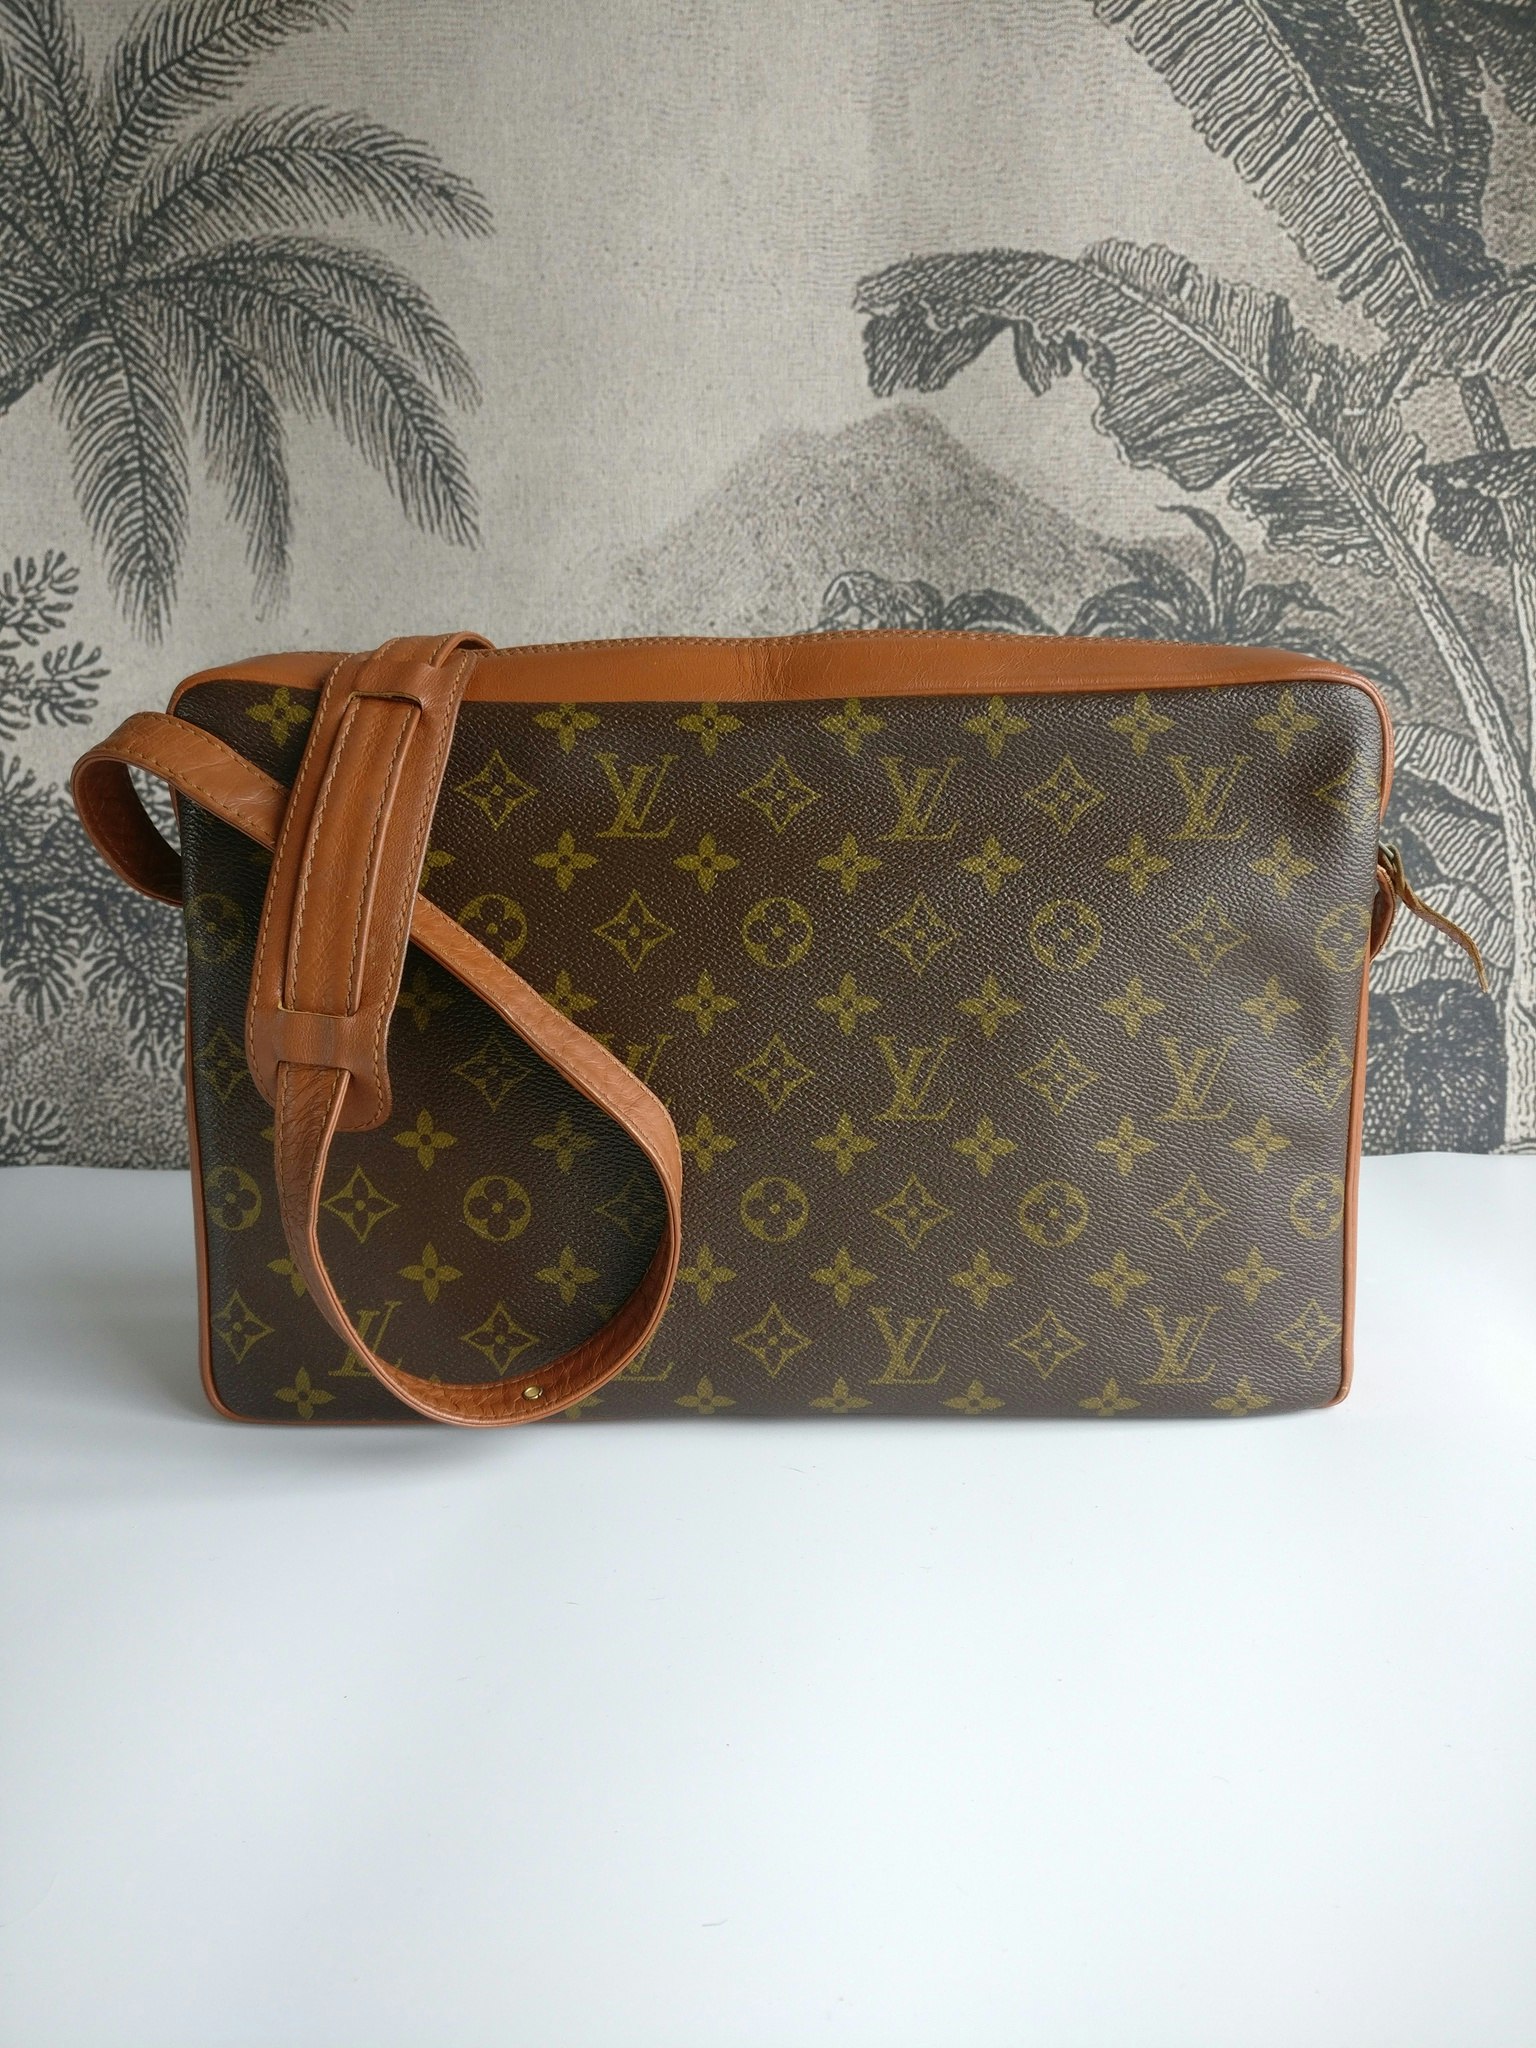 Louis Vuitton Sac Bandouliére - Good or Bag